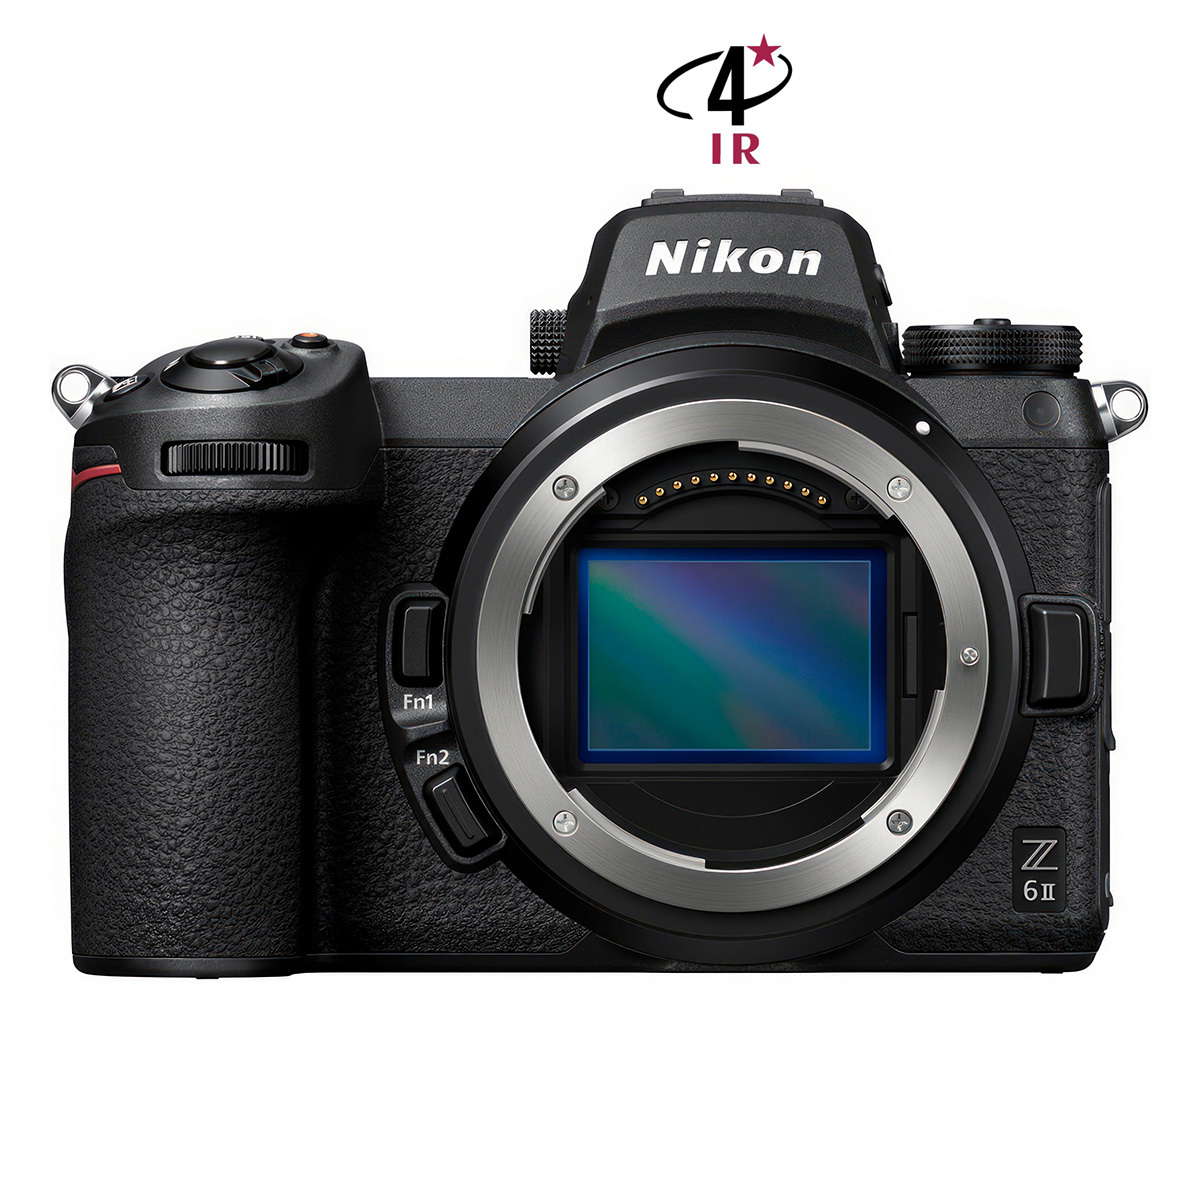 Hybride Nikon Z6II neuf défiltré + refiltré 4'IR New 4'IR Cameras